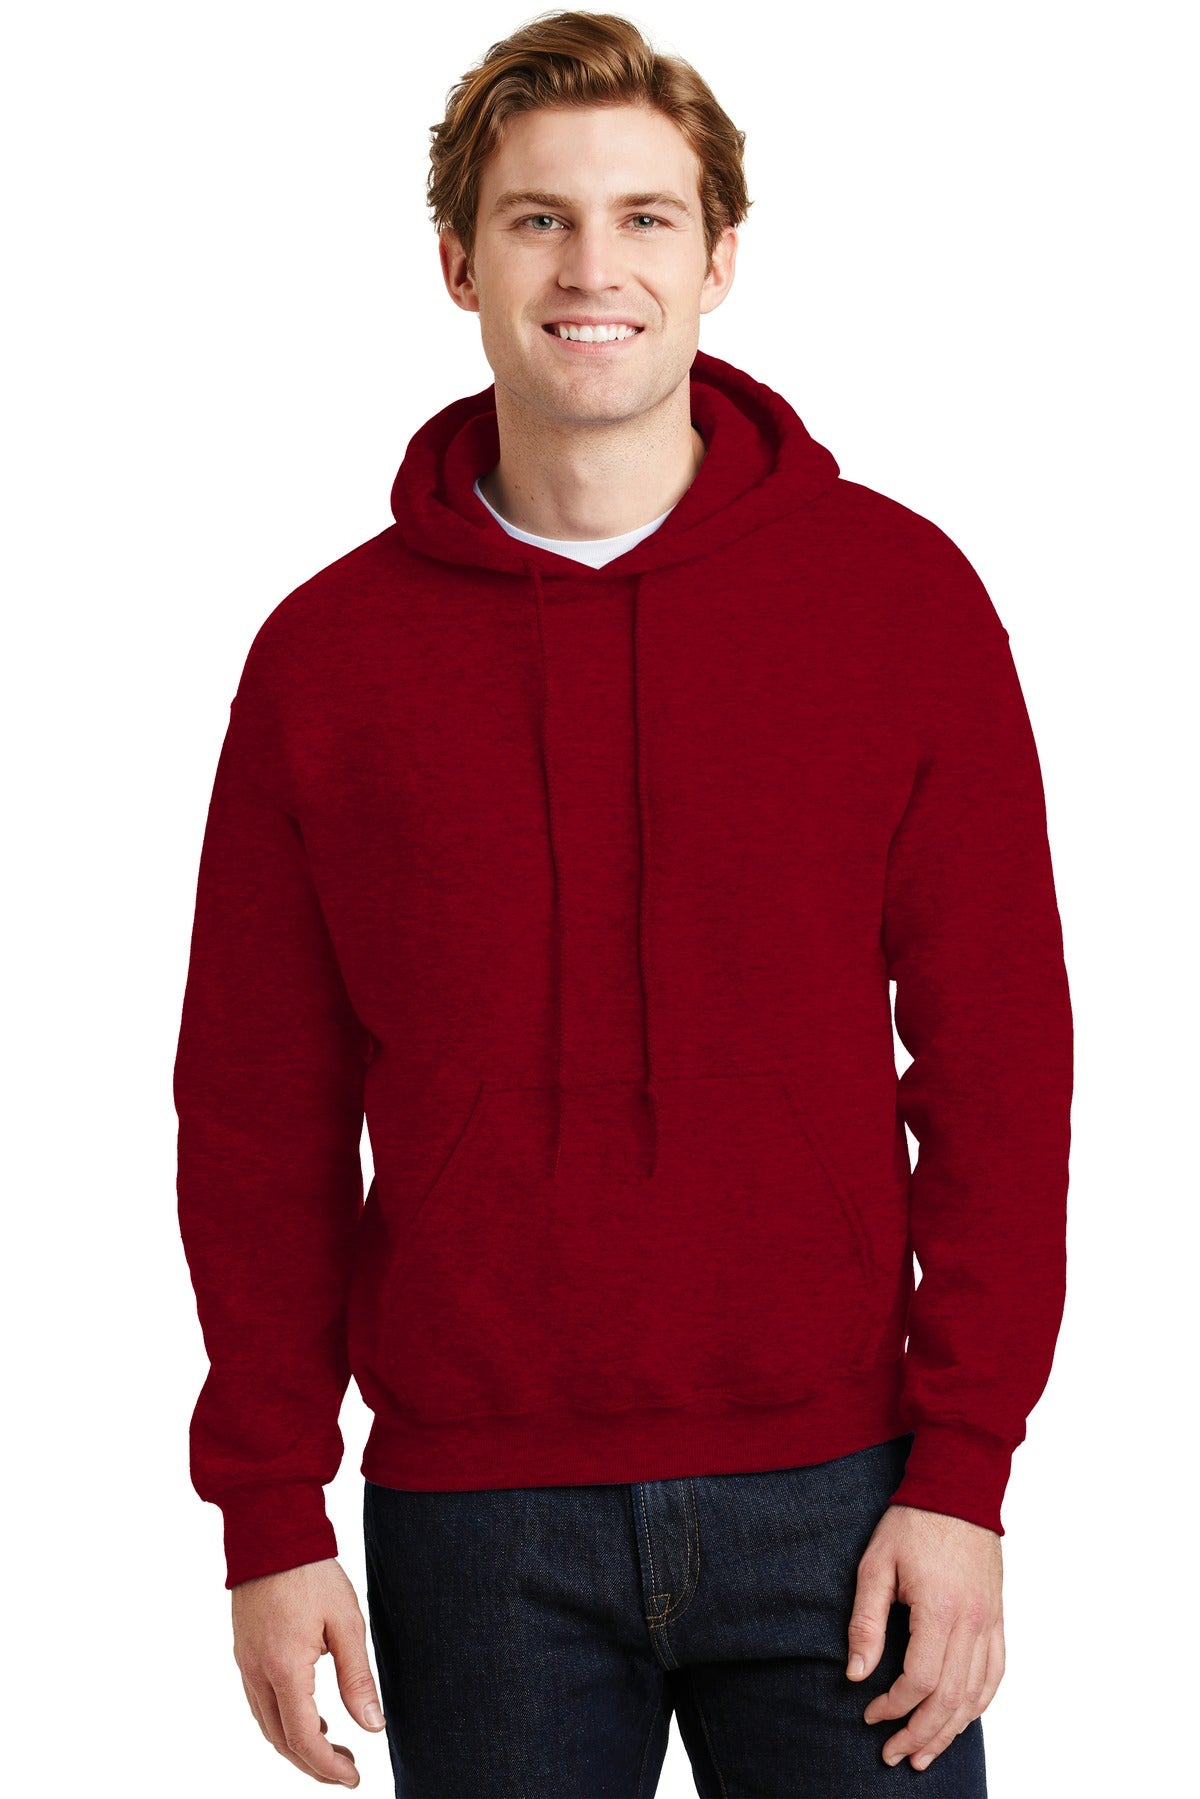 Sweatshirts/Fleece Antique Cherry Red Gildan